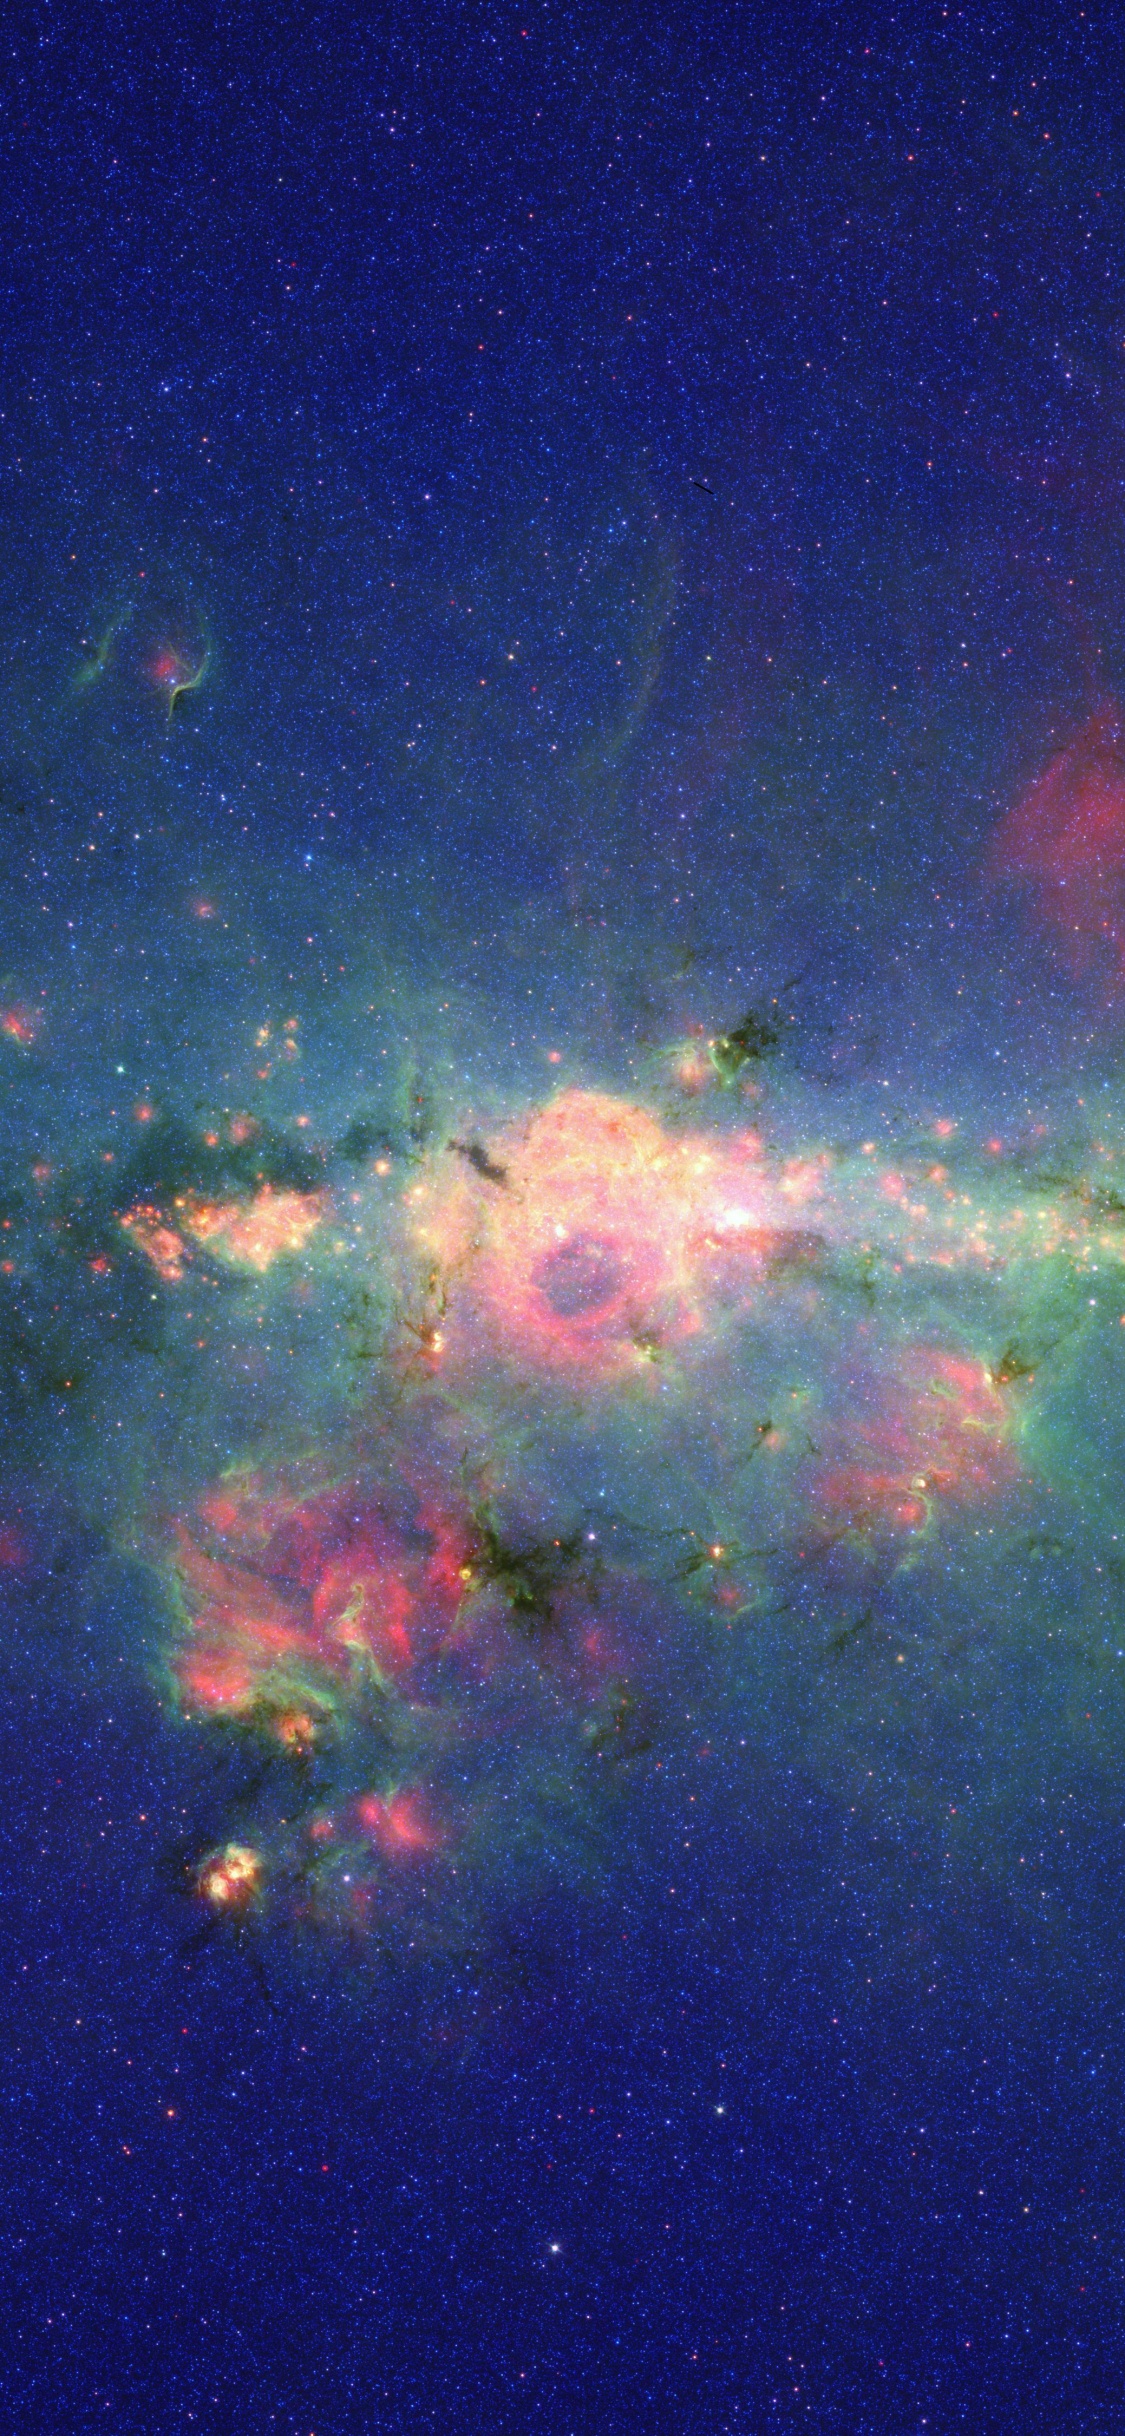 银河系, 斯皮策太空望远镜, 明星, 气氛, 天文学对象 壁纸 1125x2436 允许